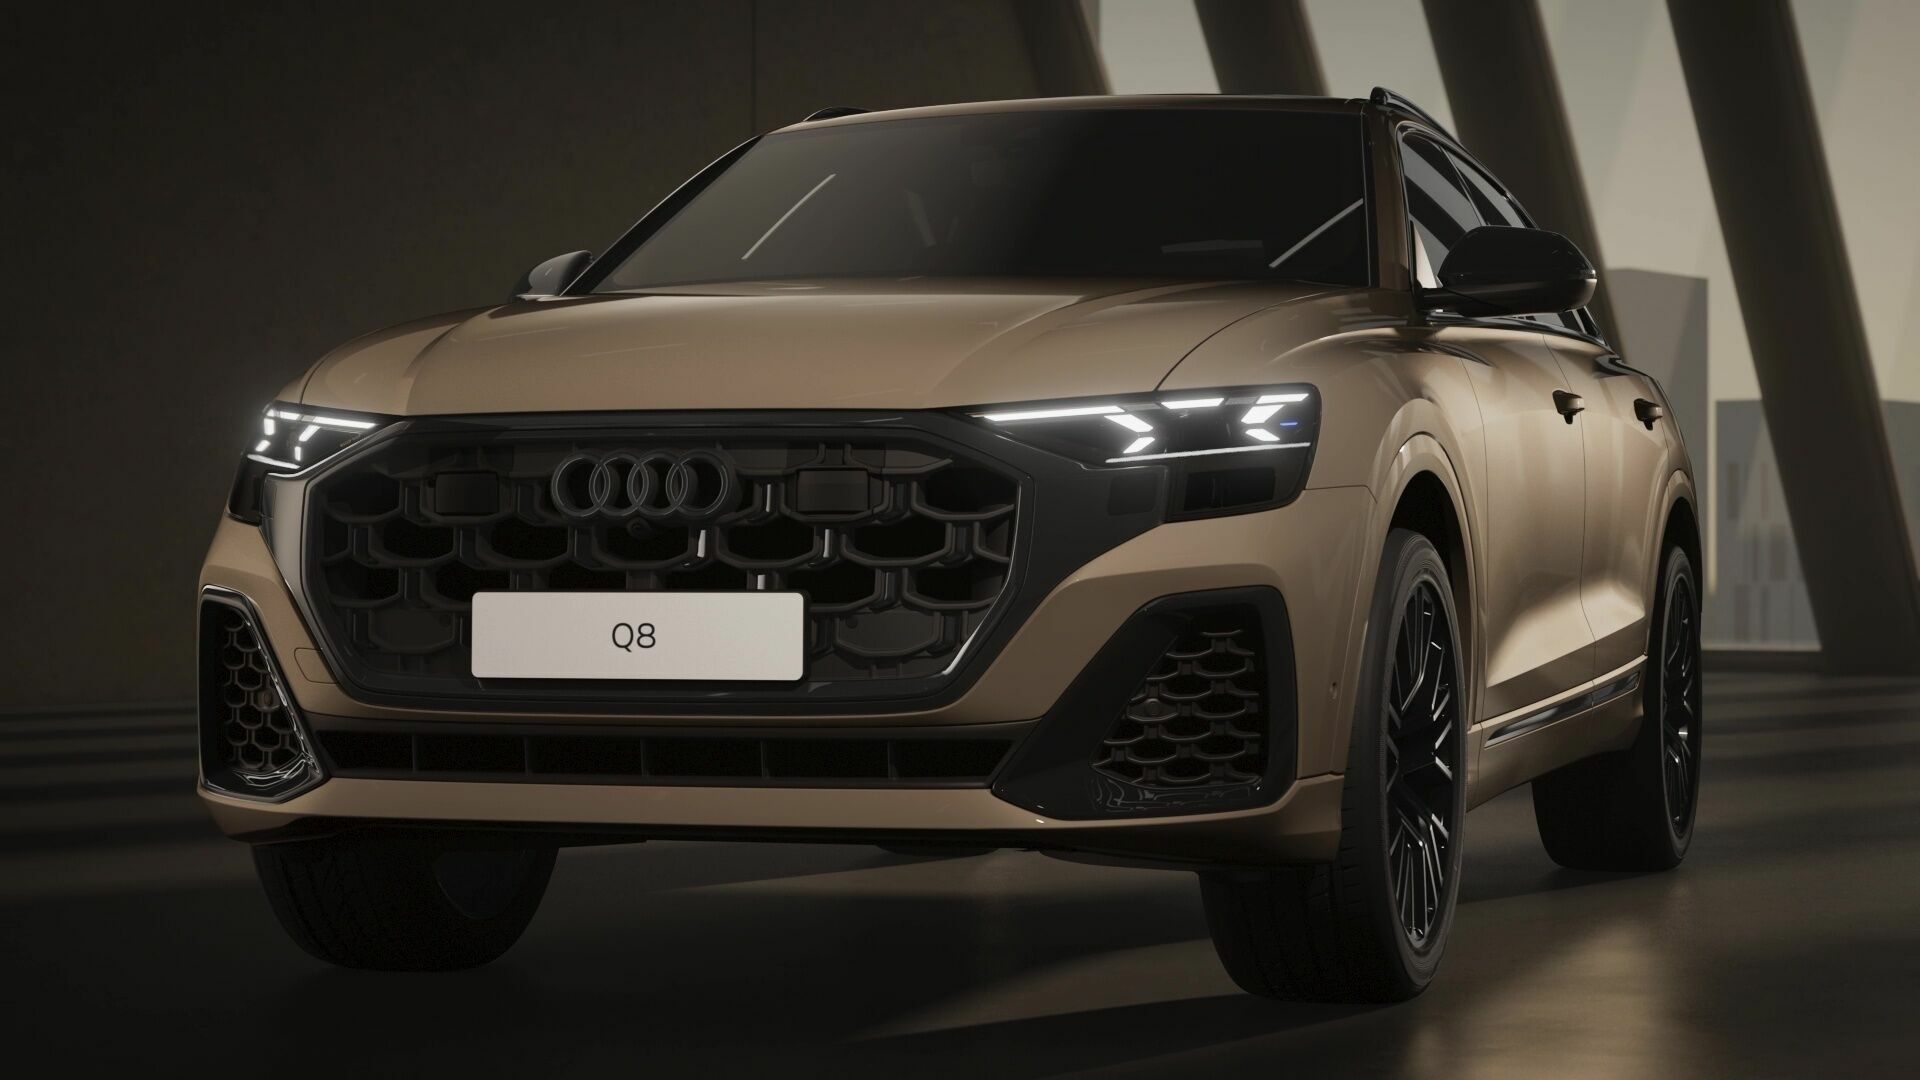 Audi Q8 – Exterior design – Animation